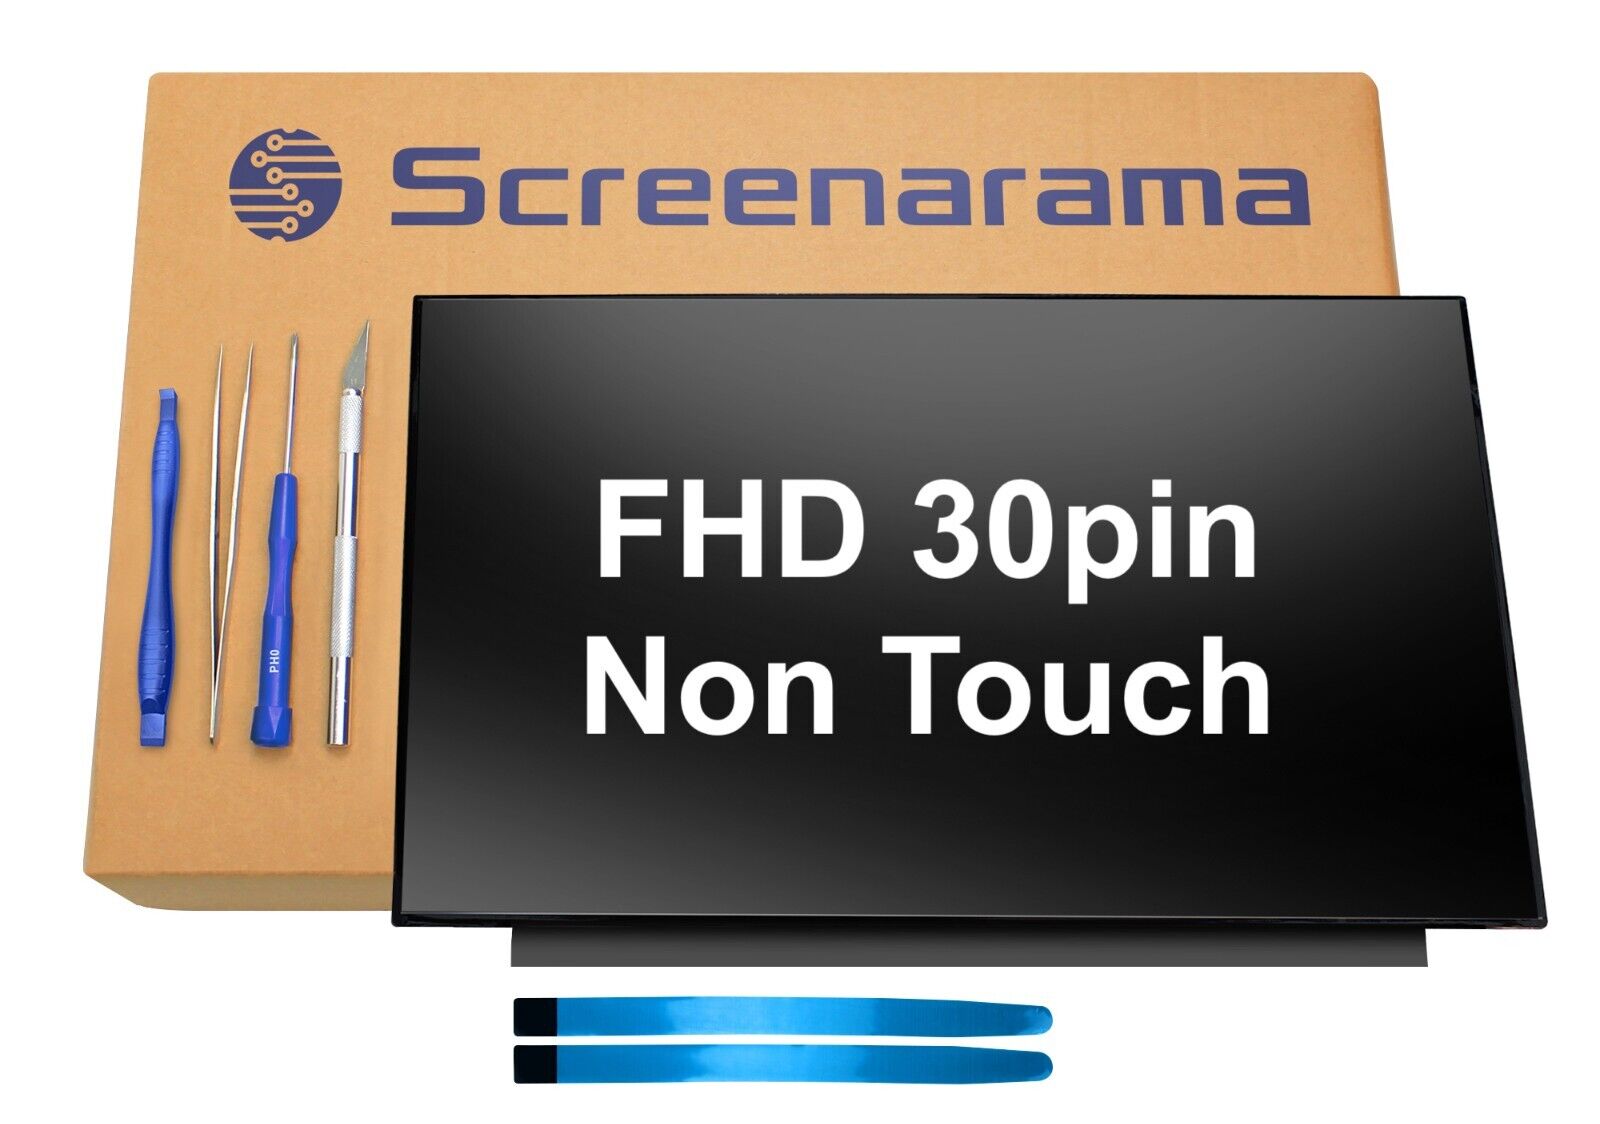 ASUS ROG G531G G531GT G531GT-BI7N6 FHD IPS 60Hz LCD Screen SCREENARAMA * FAST